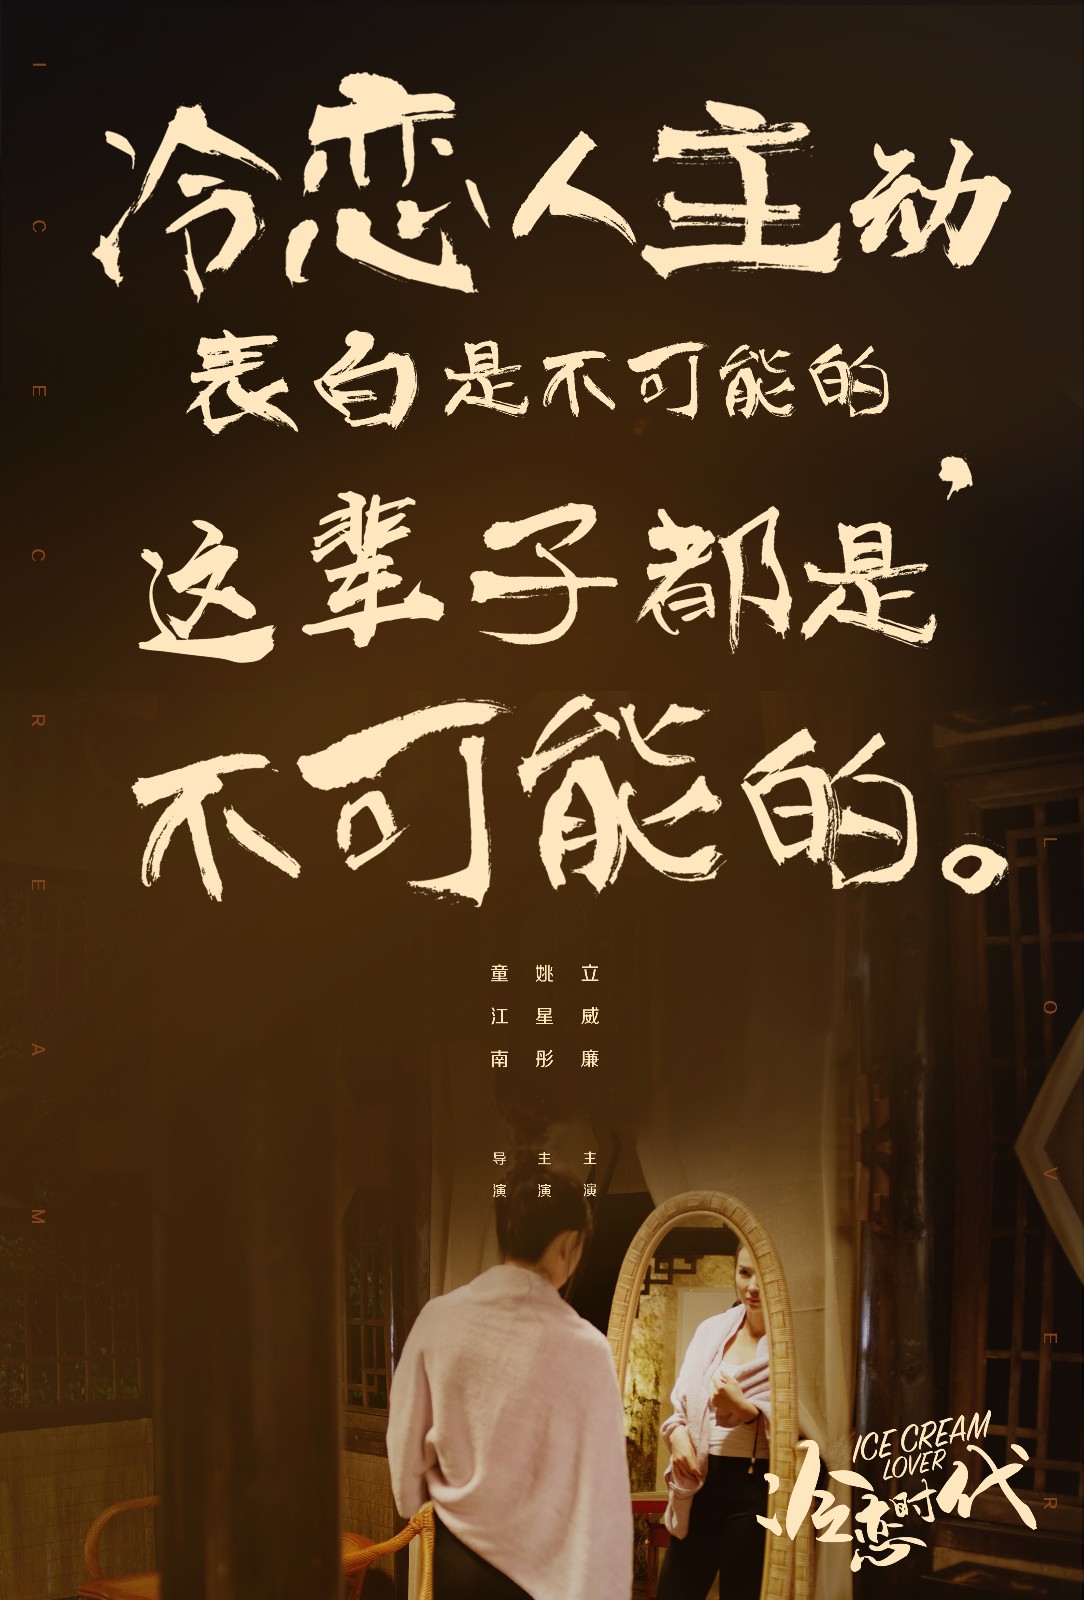 《冷恋时代》发布"鸡汤"版海报 冷恋语录句句扎心